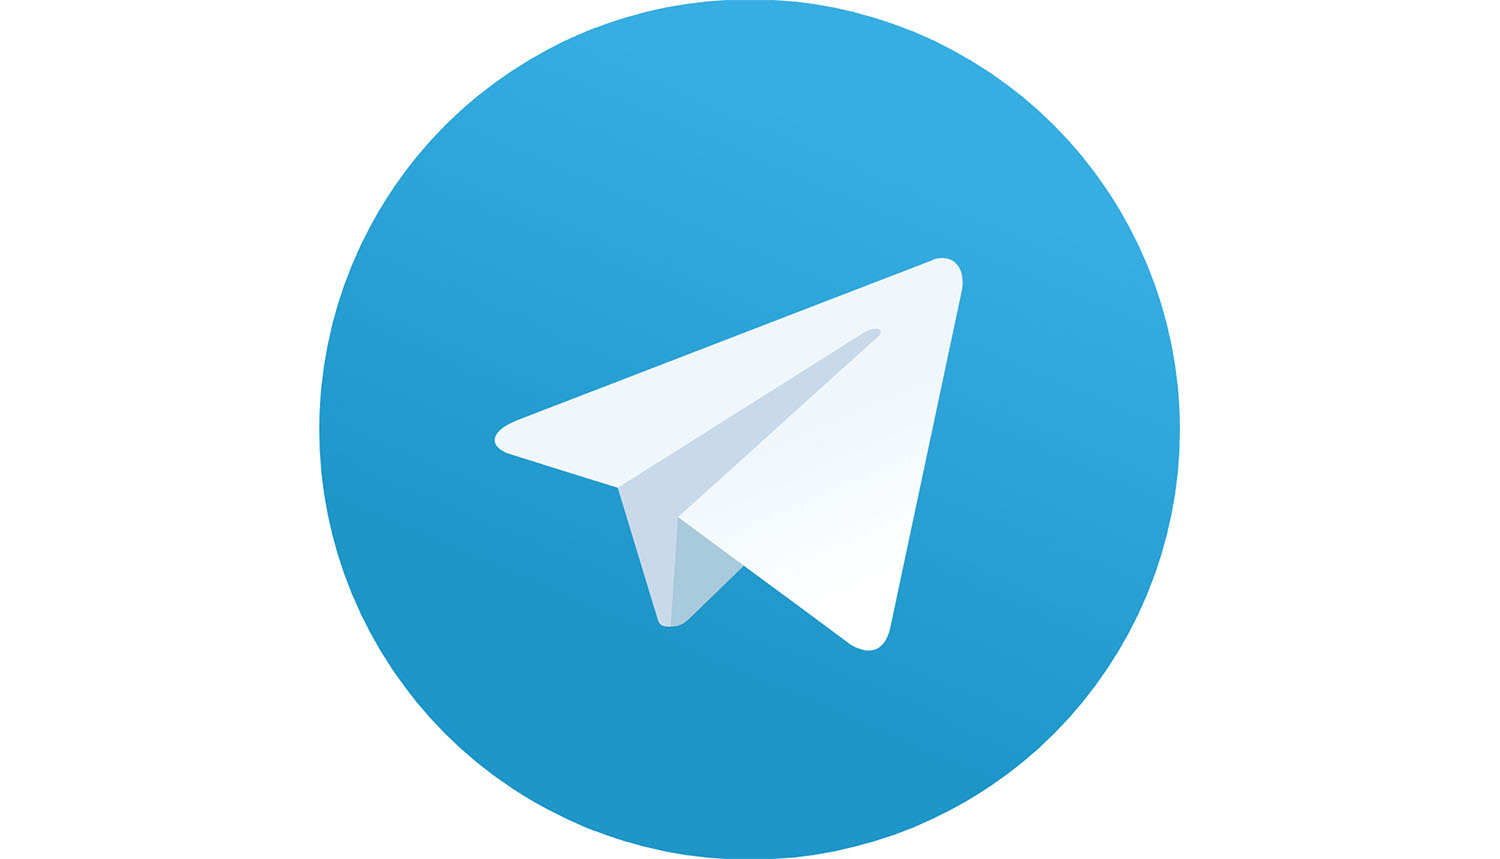 Da Telegram-teamet var på besøk i USA i fjor, forsøkte amerikanske myndigheter å bestikke utviklerne til å legge inn bakdører, hevder grunnleggeren.